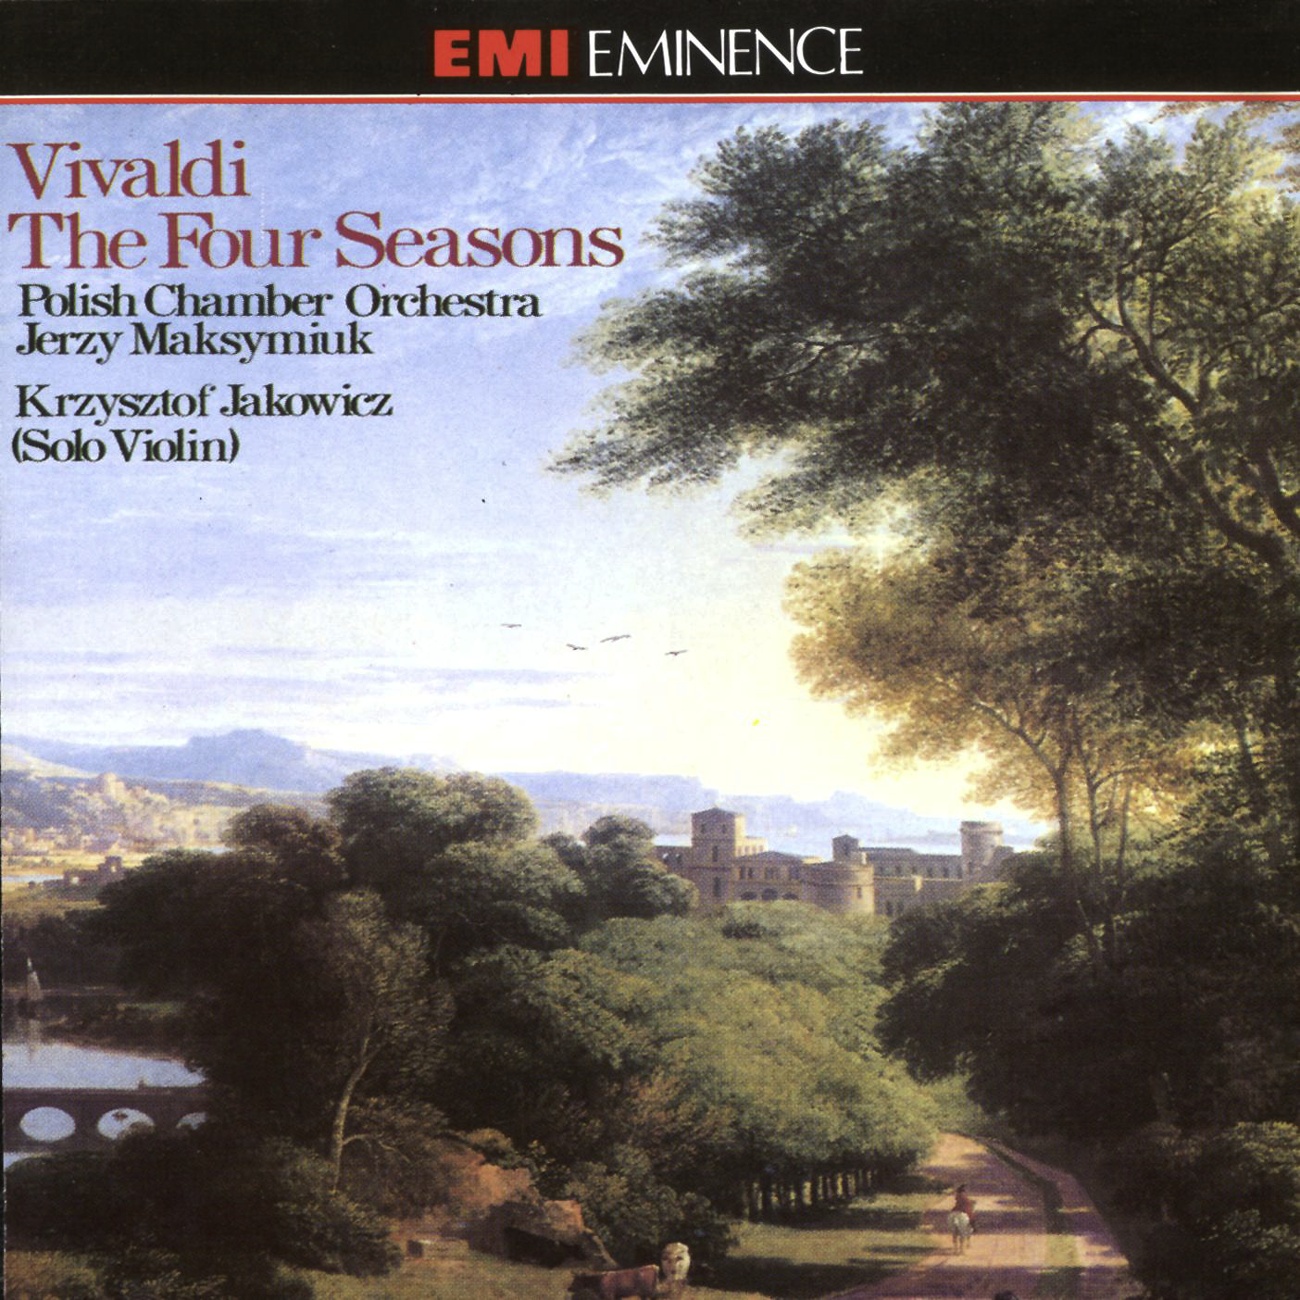 The Four Seasons Op. 8 Nos. 1-4 (1990 Digital Remaster), Concerto No. 4 in F minor (L'inverno/ Winter) RV297 (Op. 8 No. 4): III.